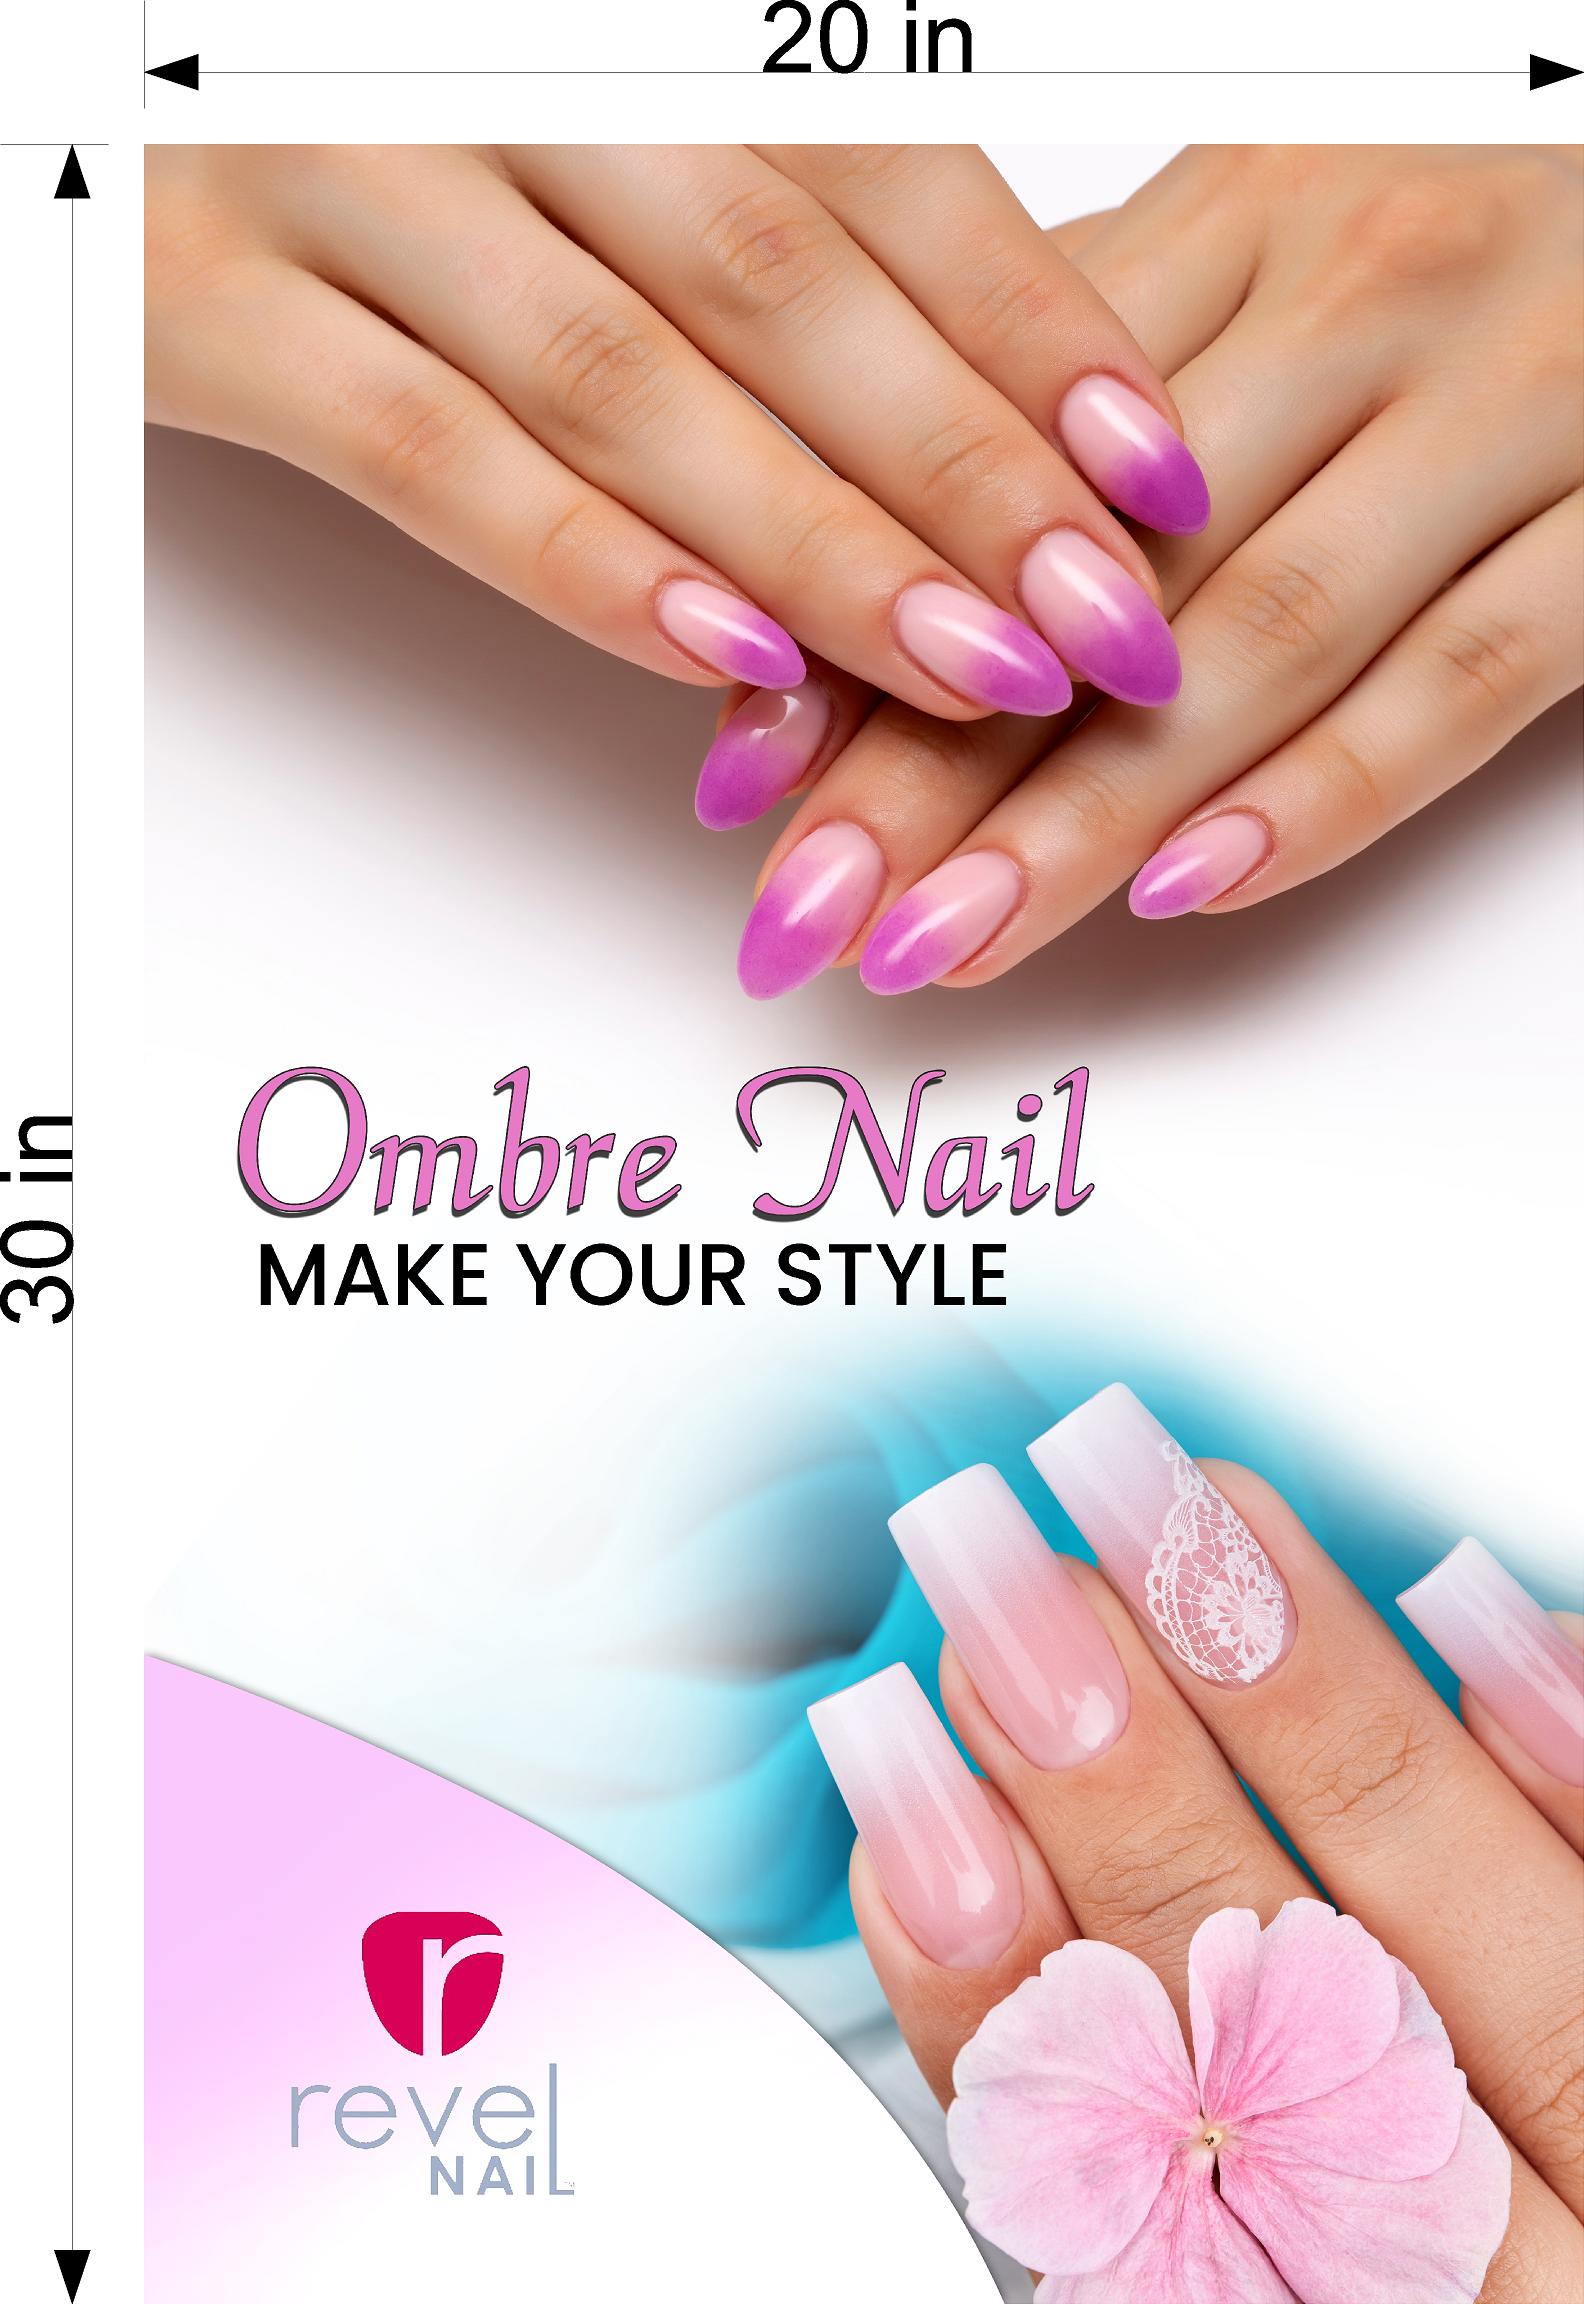 Ombre nail lounge:
Ombre nail lounge là nơi lý tưởng để các bạn thỏa sức sáng tạo với những bộ móng tay ombre tuyệt đẹp. Với dịch vụ đẳng cấp và không gian thư giãn, chúng tôi sẽ đem đến cho bạn những trải nghiệm khó quên. Hãy để chúng tôi tô điểm cho đôi bàn tay xinh đẹp của bạn.